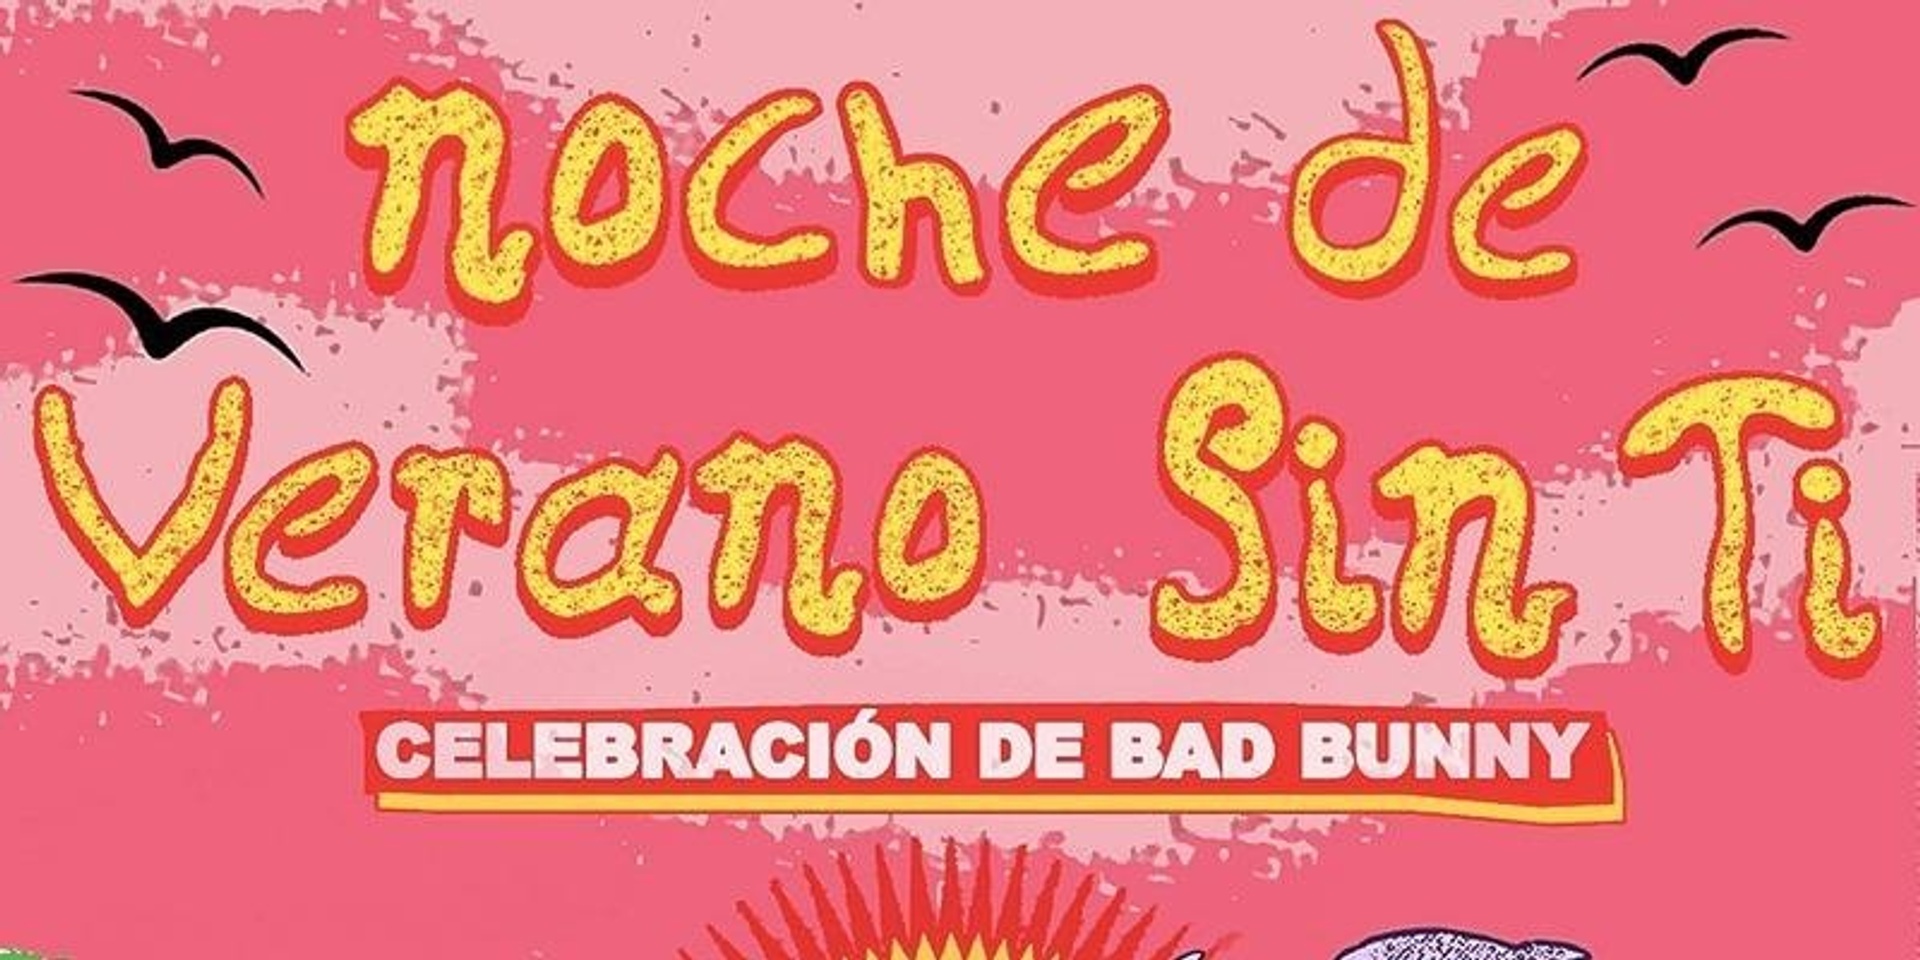 NOCHE DE VERANO SIN TI - Celebración de Bad Bunny! - VANCOUVER